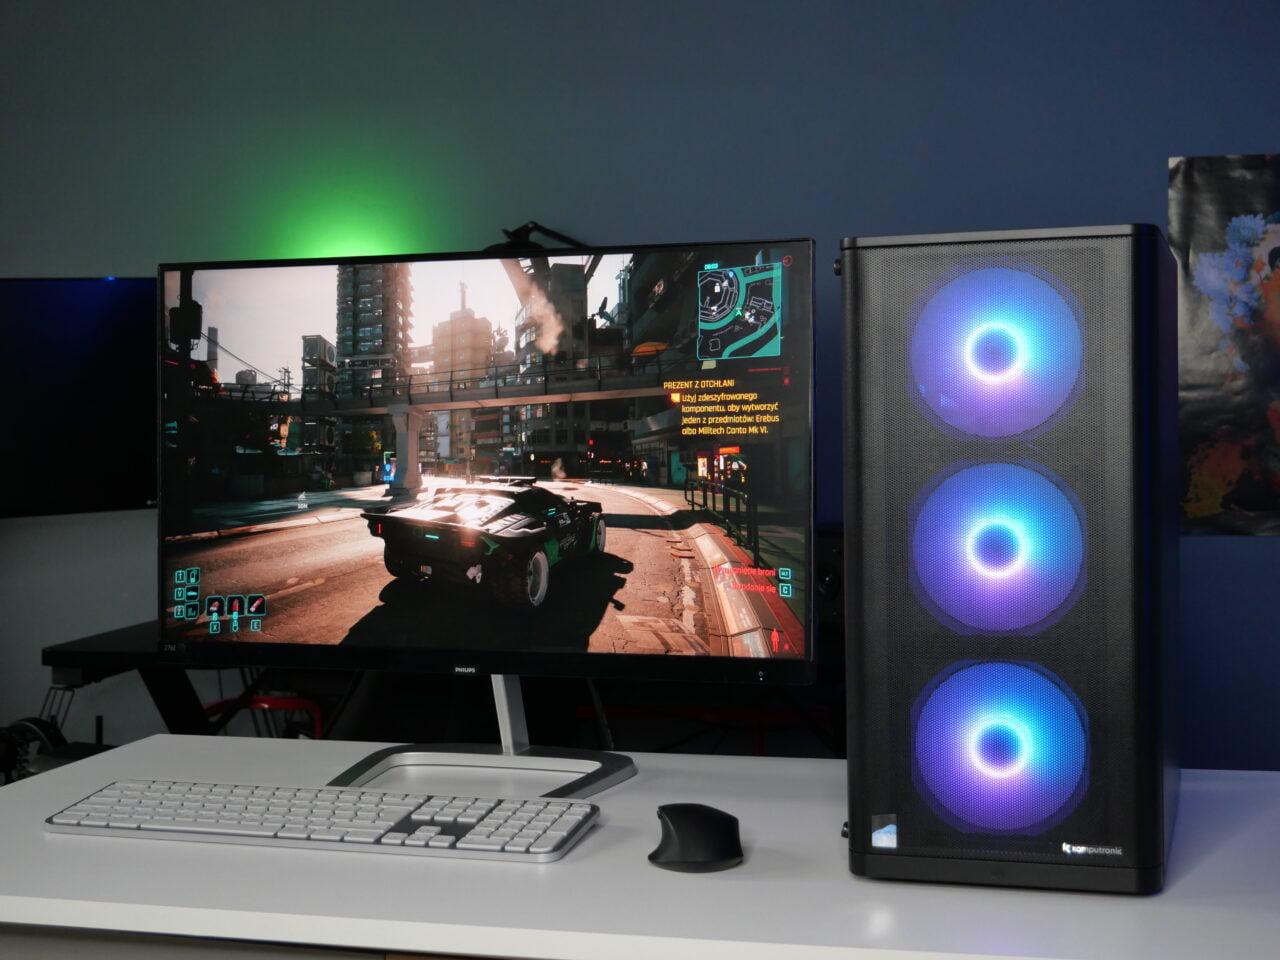 Zestaw komputerowy z podświetlaną obudową PC i dwoma monitorami, na których wyświetlana jest gra wideo, na biurku z białą klawiaturą i czarną myszką. W tle oświetlenie RGB.